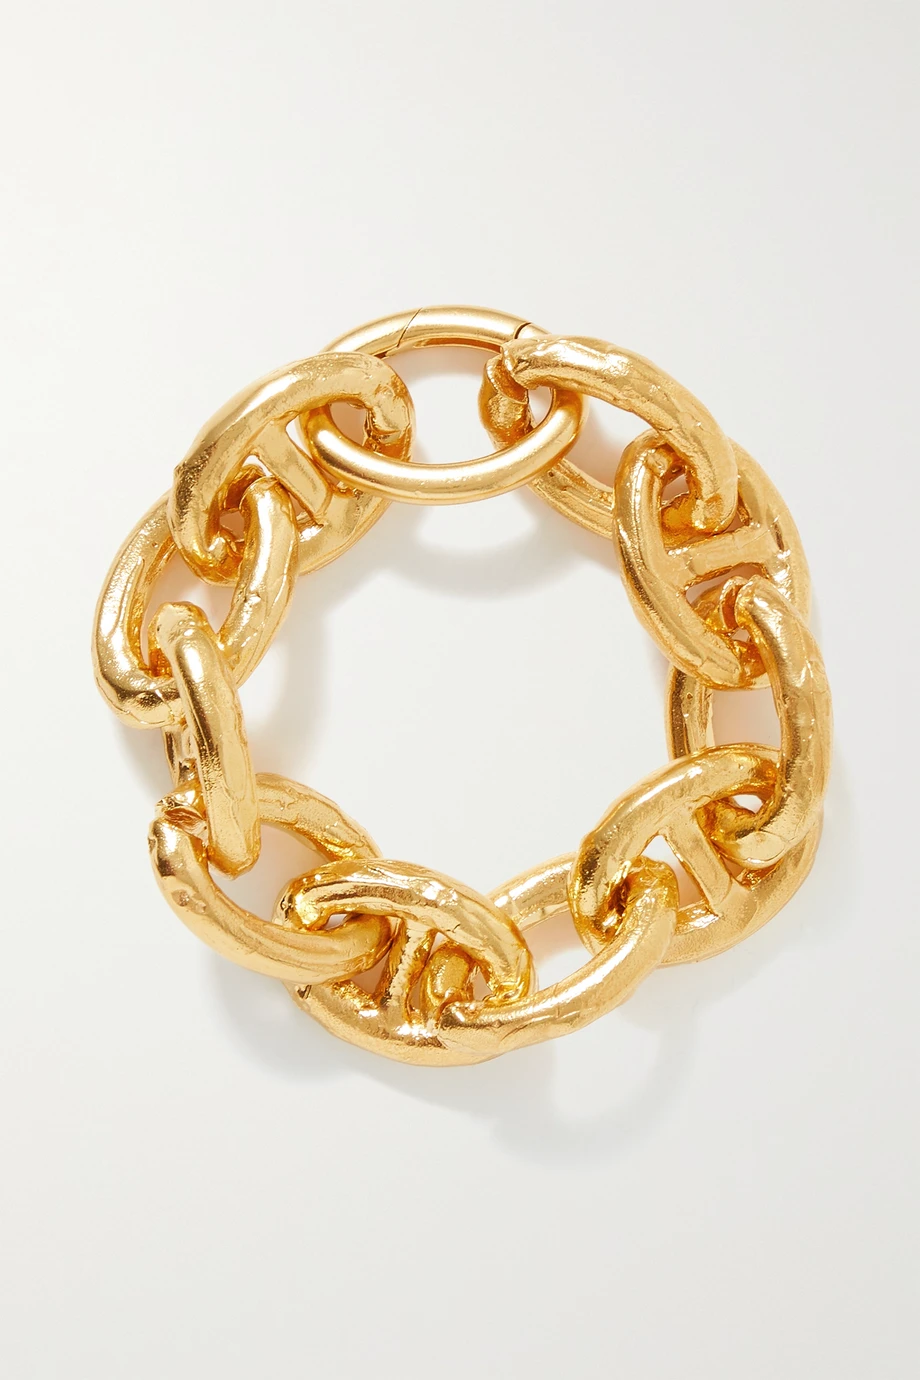 The Nocturnal Alchemy gold-plated bracelet